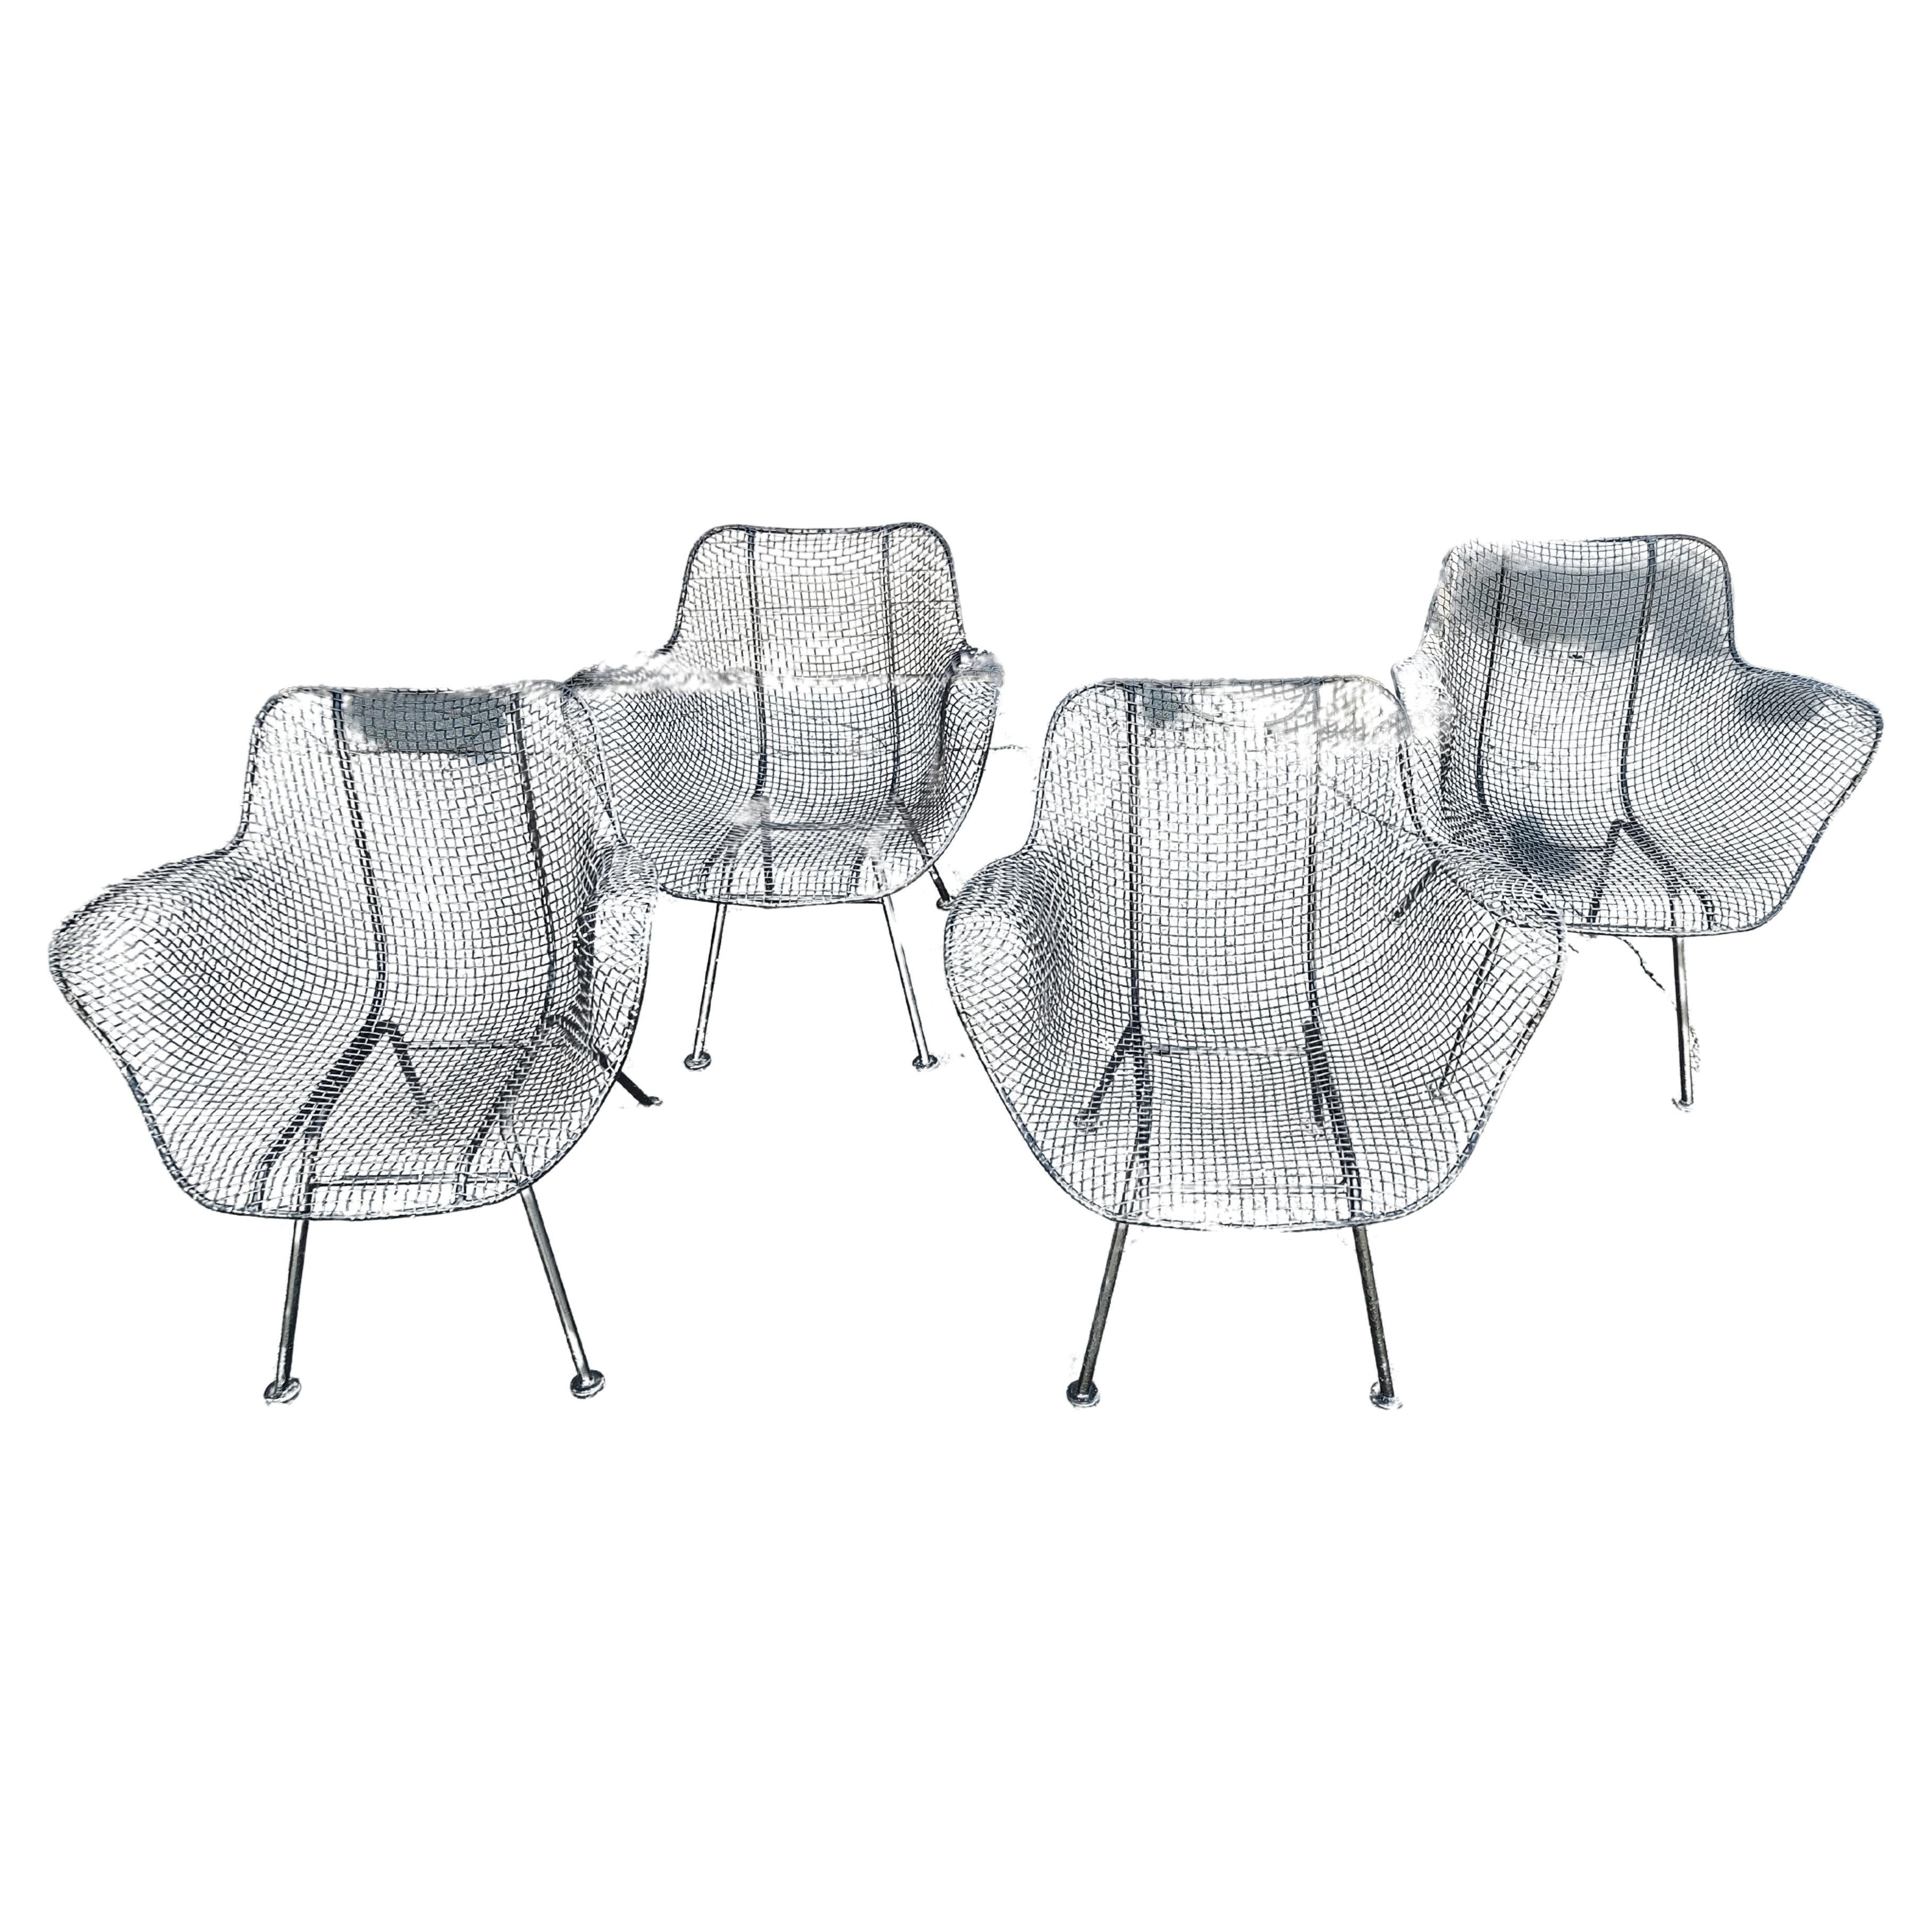 Fabelhaftes und ikonisches Set von 4 Sculptura-Sesseln, entworfen von Russell Woodard, in Schwarz. Sehr bequem und natürlich sehr angenehm für das Auge.  In ausgezeichnetem Vintage-Zustand mit minimalen Abnutzungserscheinungen, die Farbe muss auf